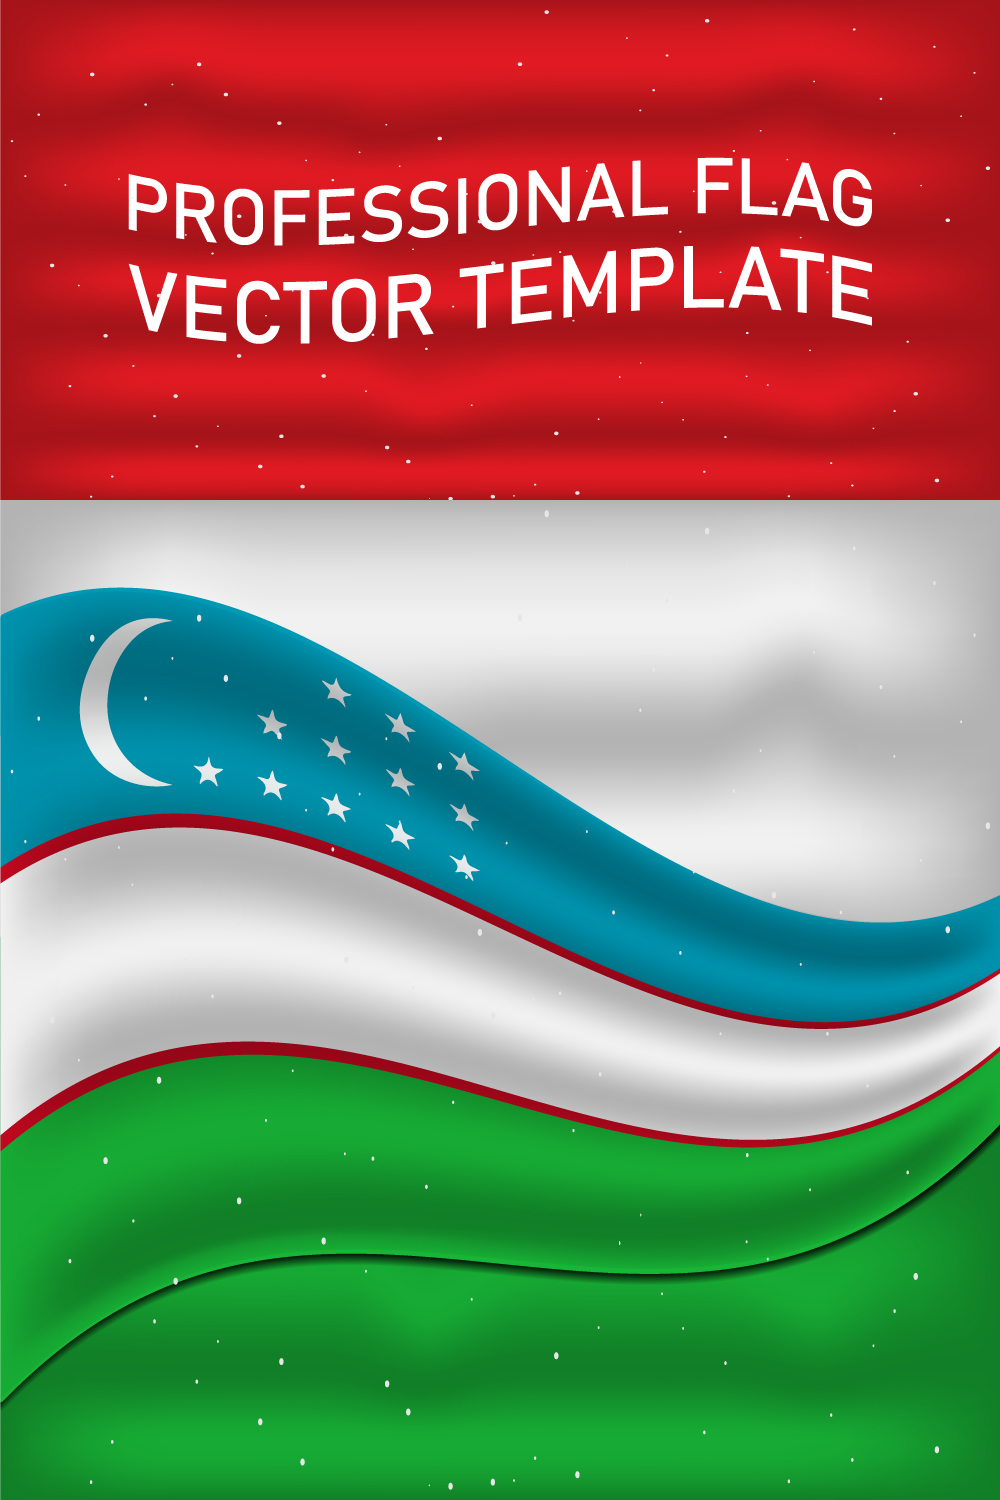 Wonderful image of the flag of Uzbekistan.